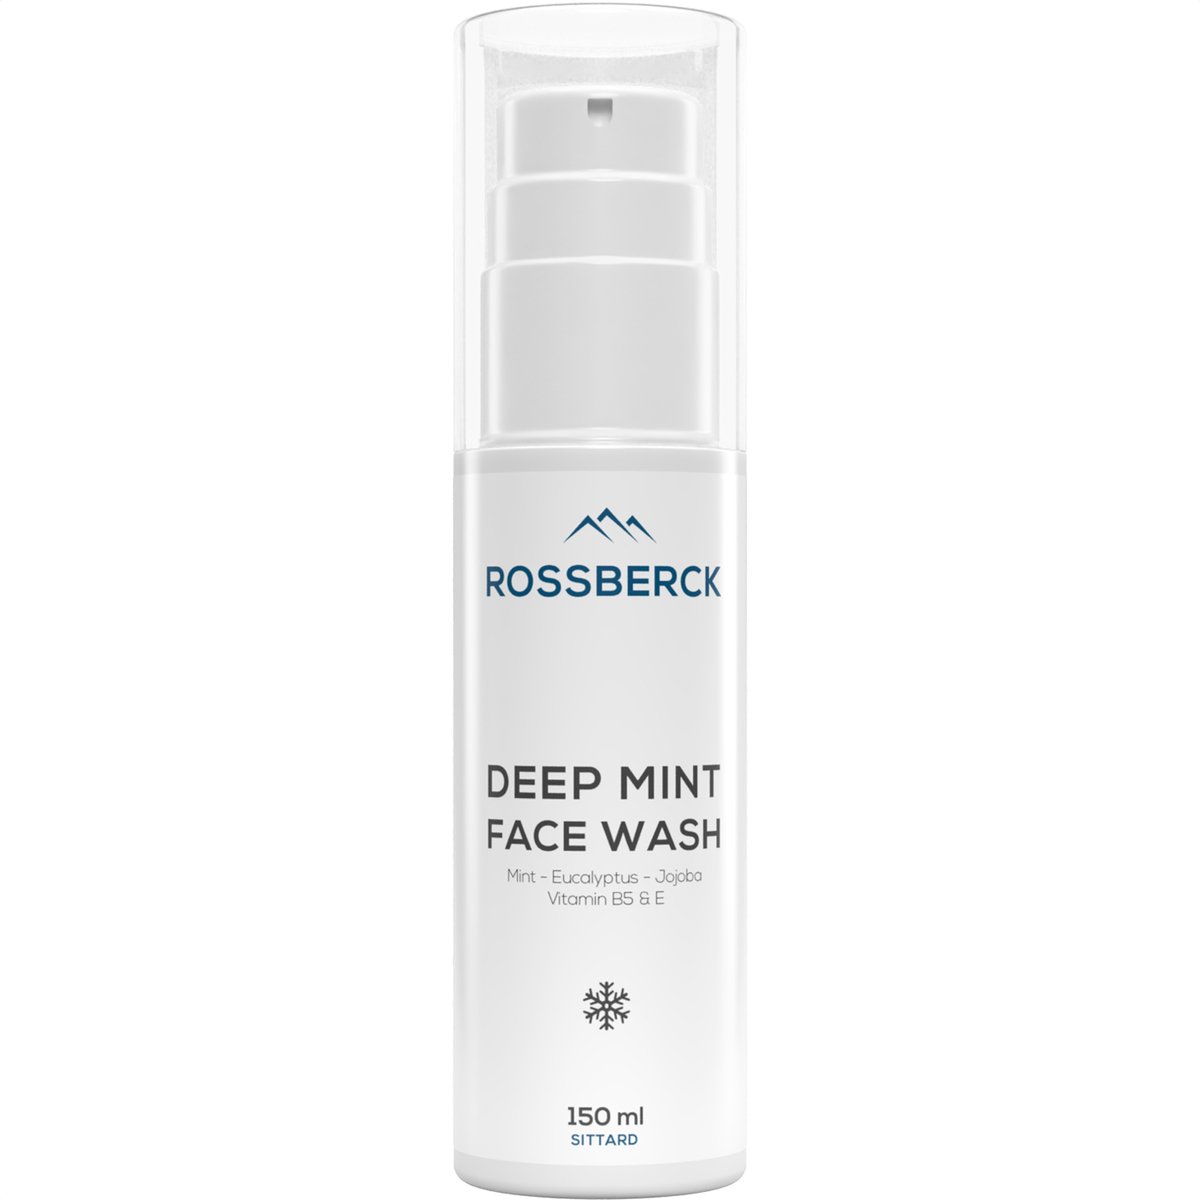 Rossberck Deep Mint Face Wash